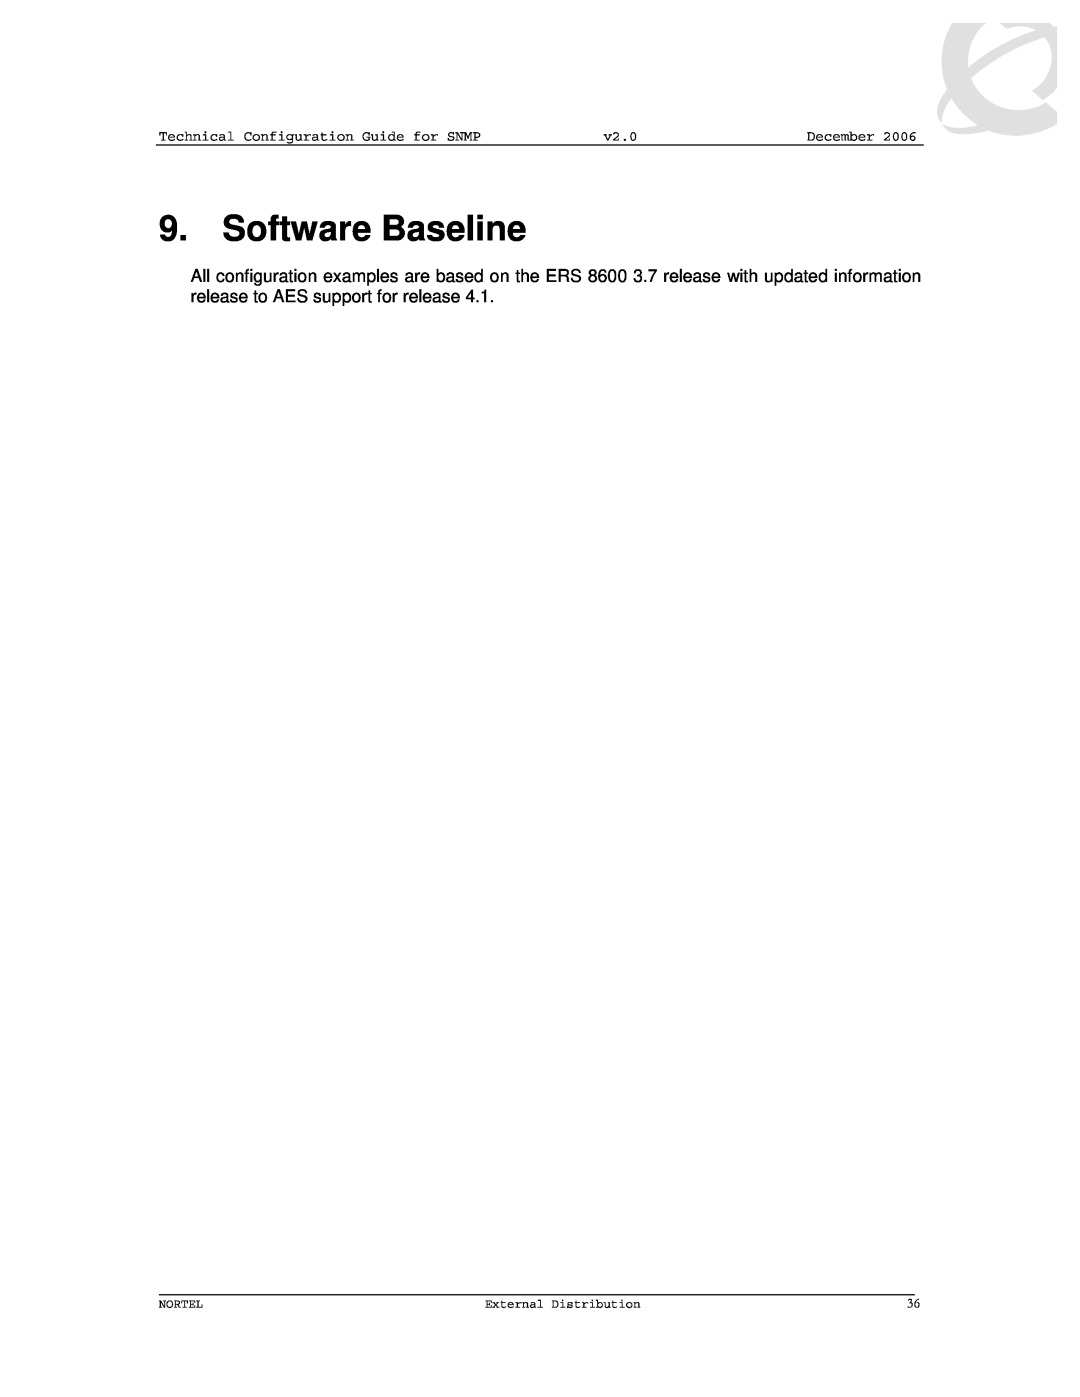 Nortel Networks 8600 manual Software Baseline, December, Nortel, External Distribution 